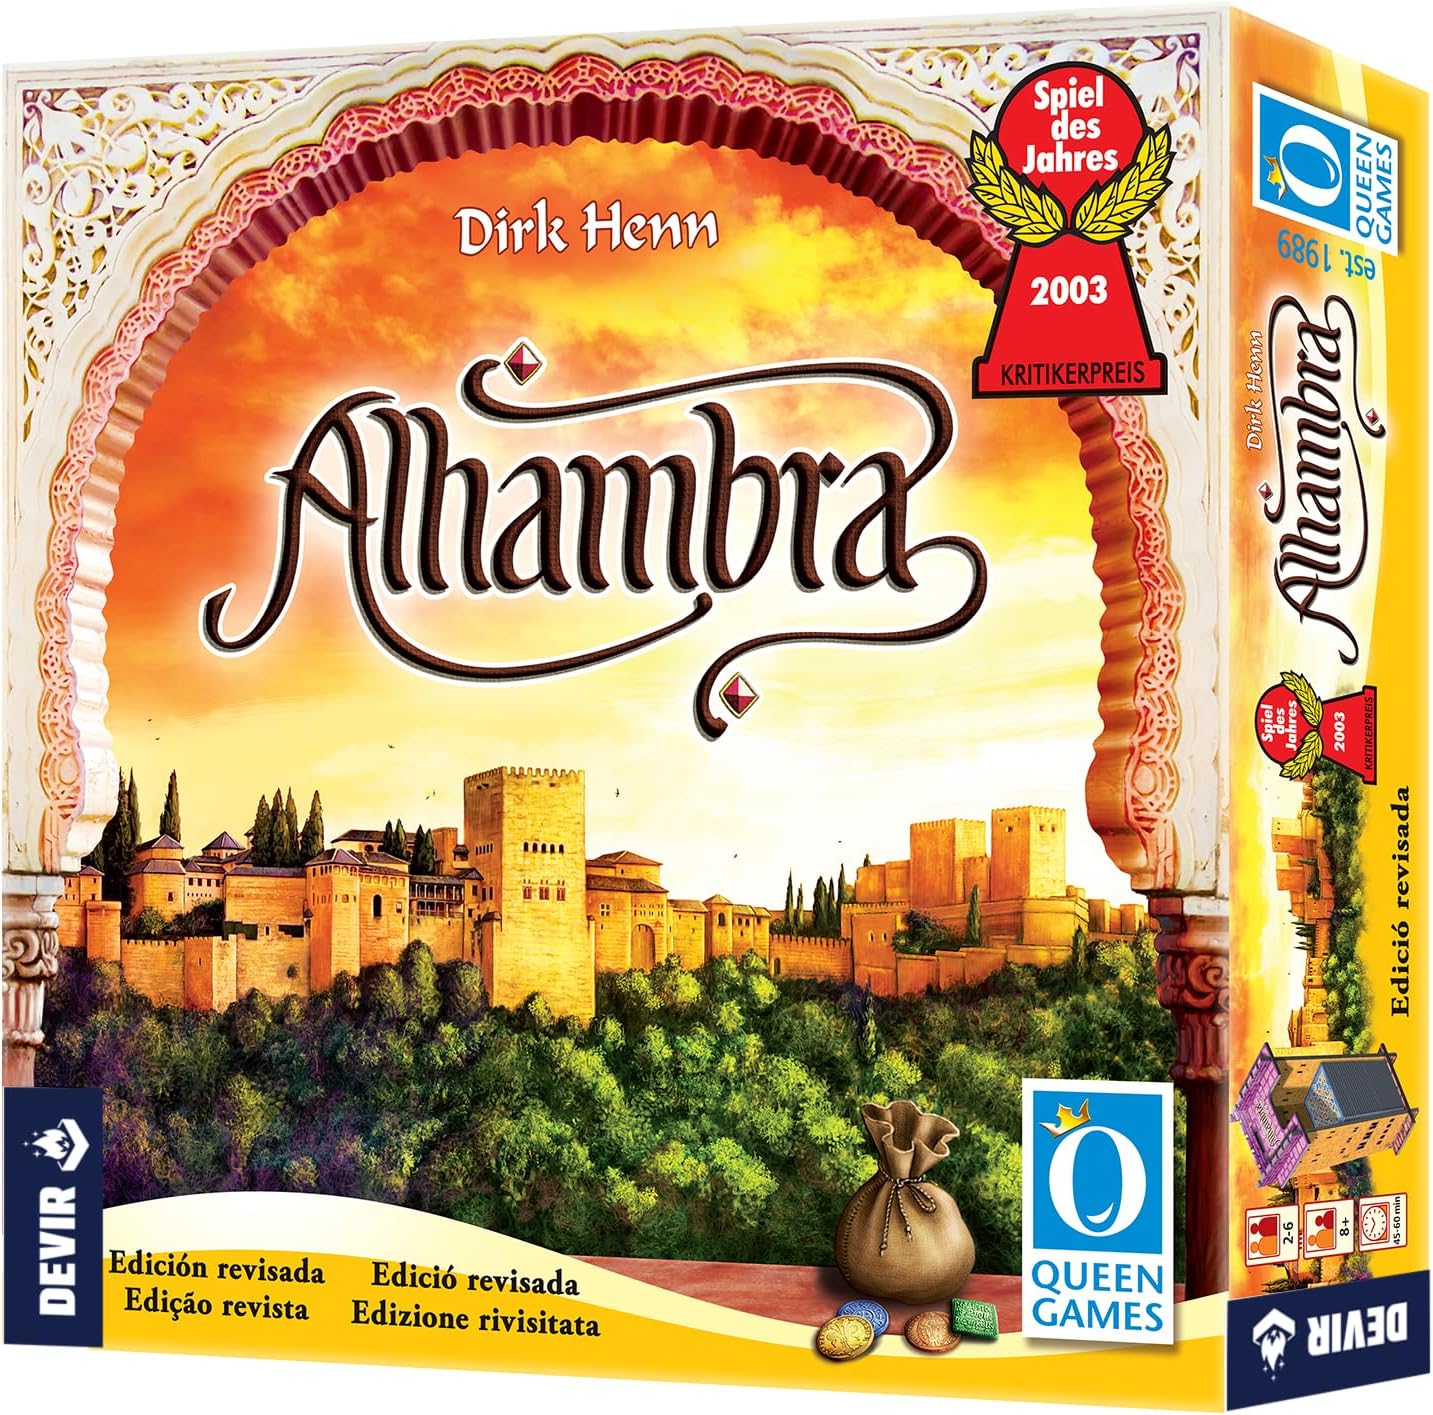 Alhambra Ed. 2020 Juego de Tablero - Tematica Historia/Mediaval - De 2 a 6 Jugadores - A partir de 8